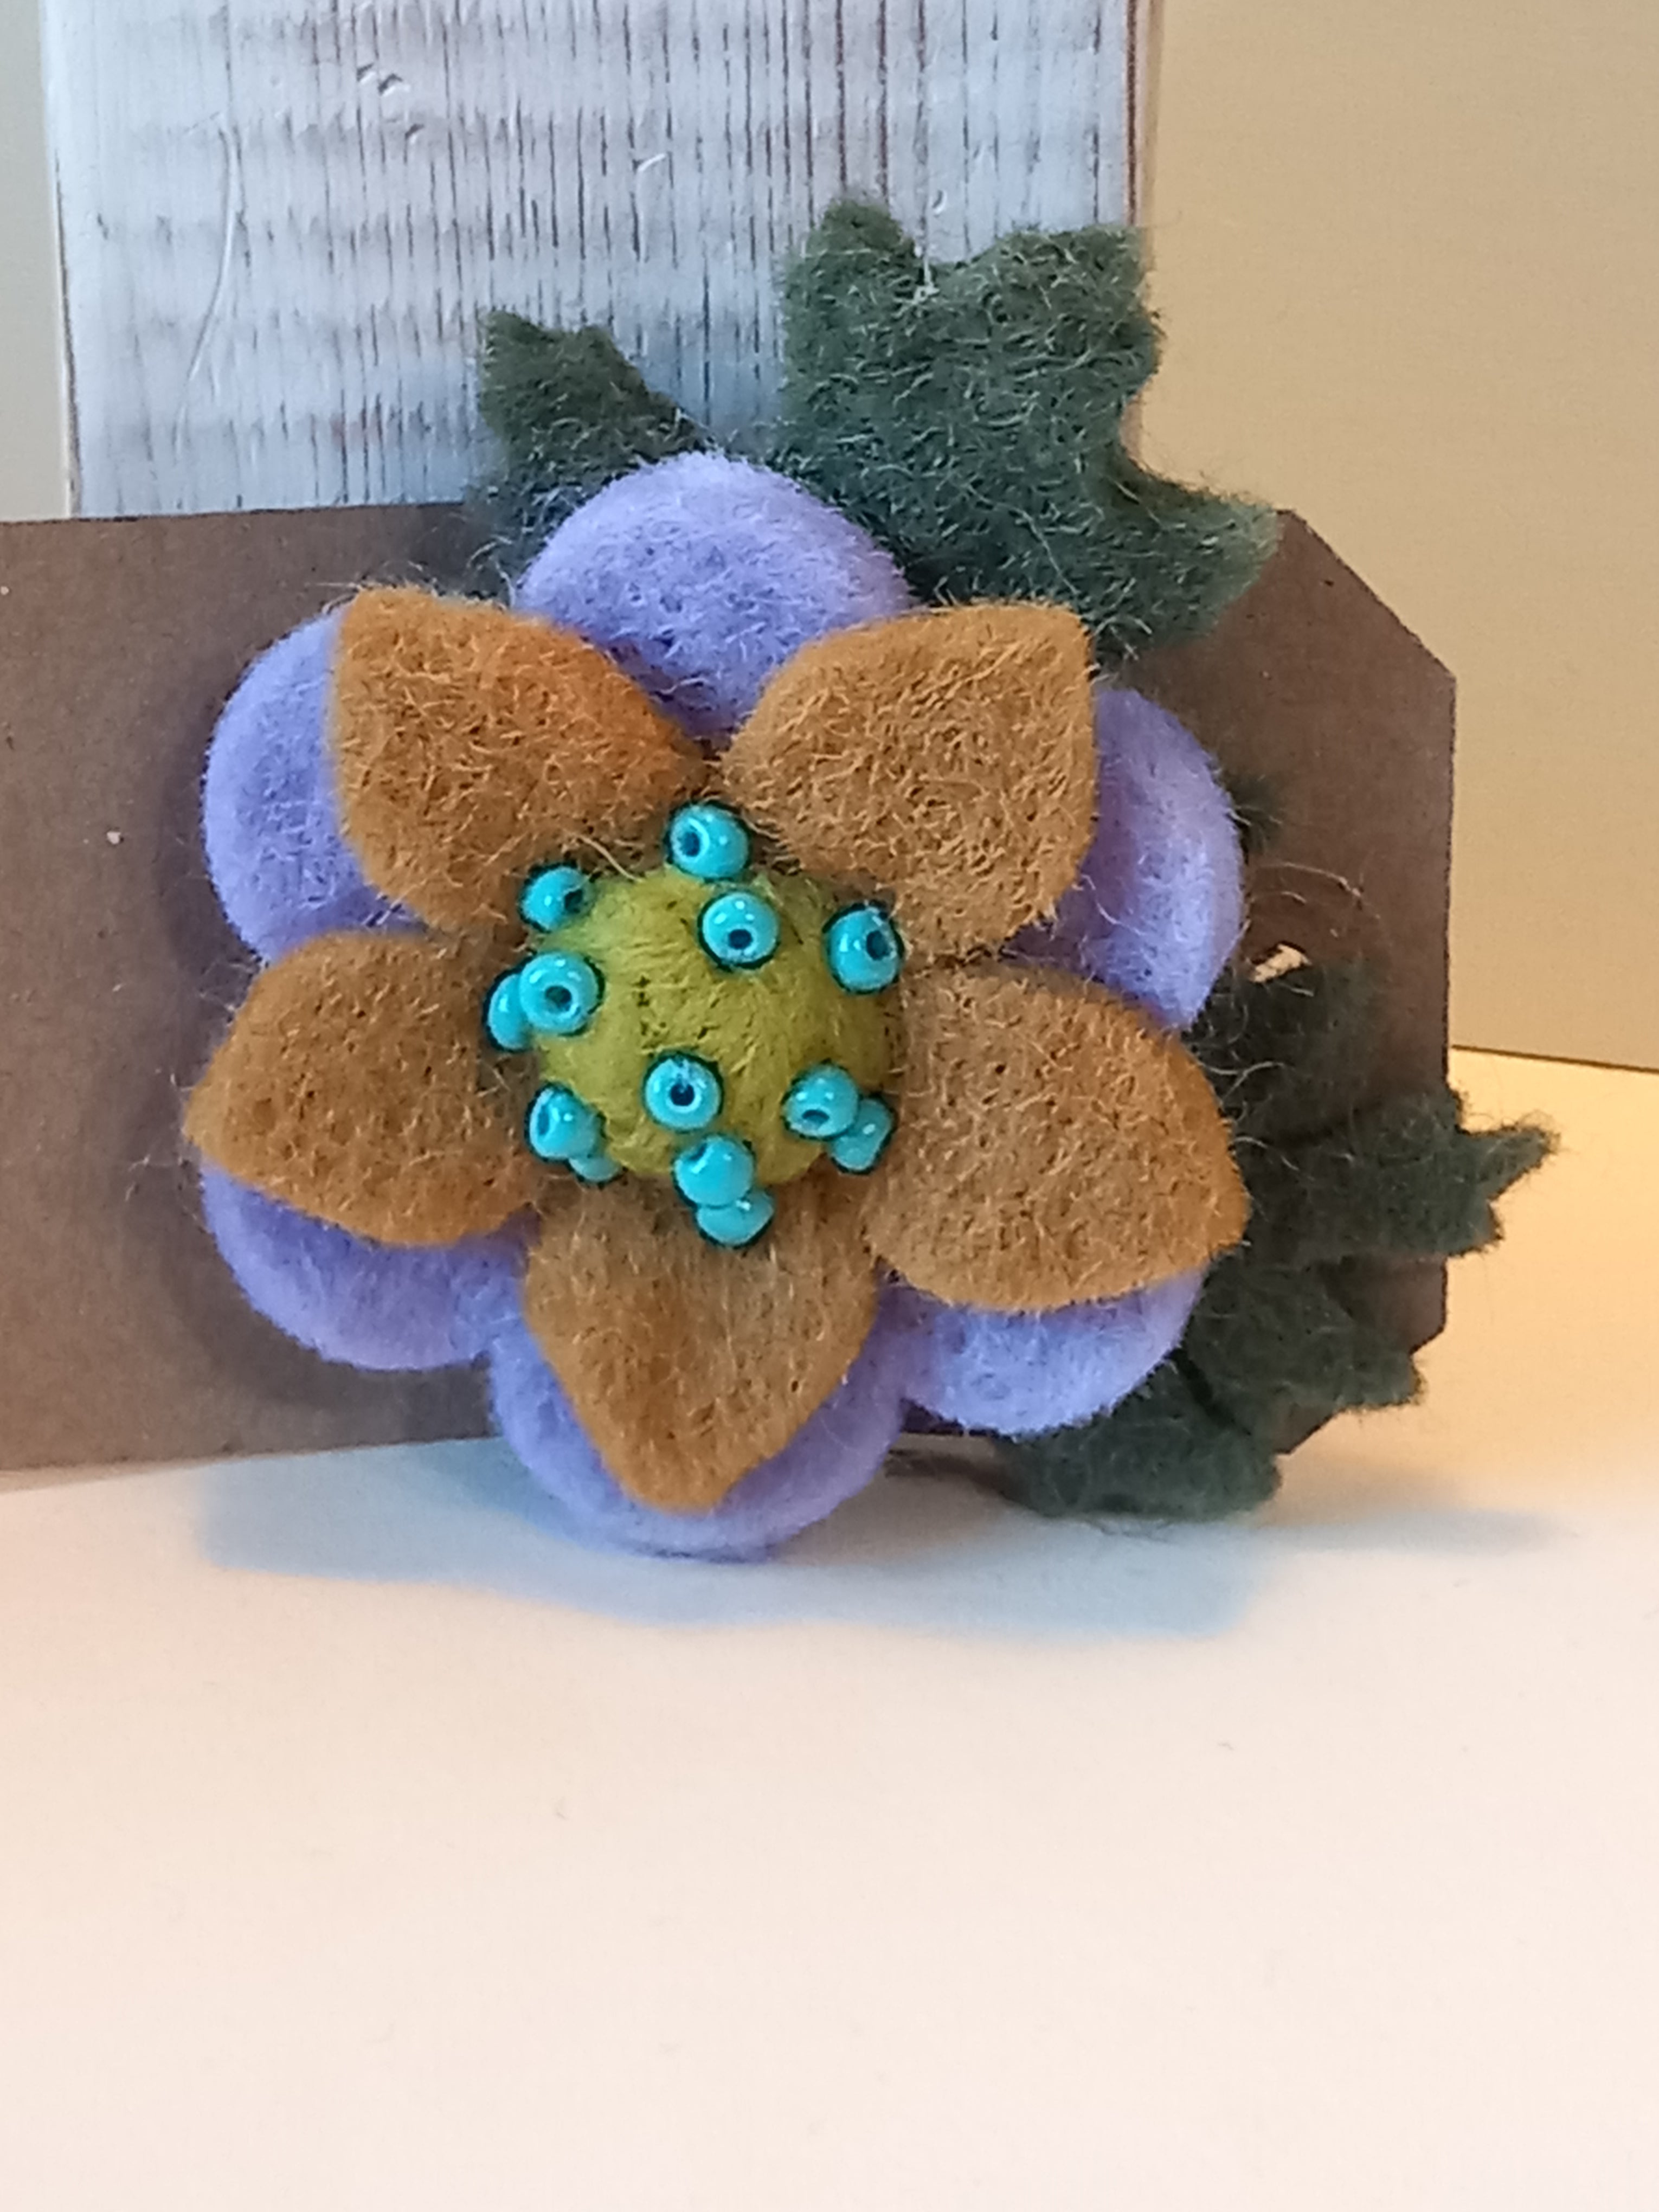 Single Felt Flower Brooch Handmade by Syrah Jay